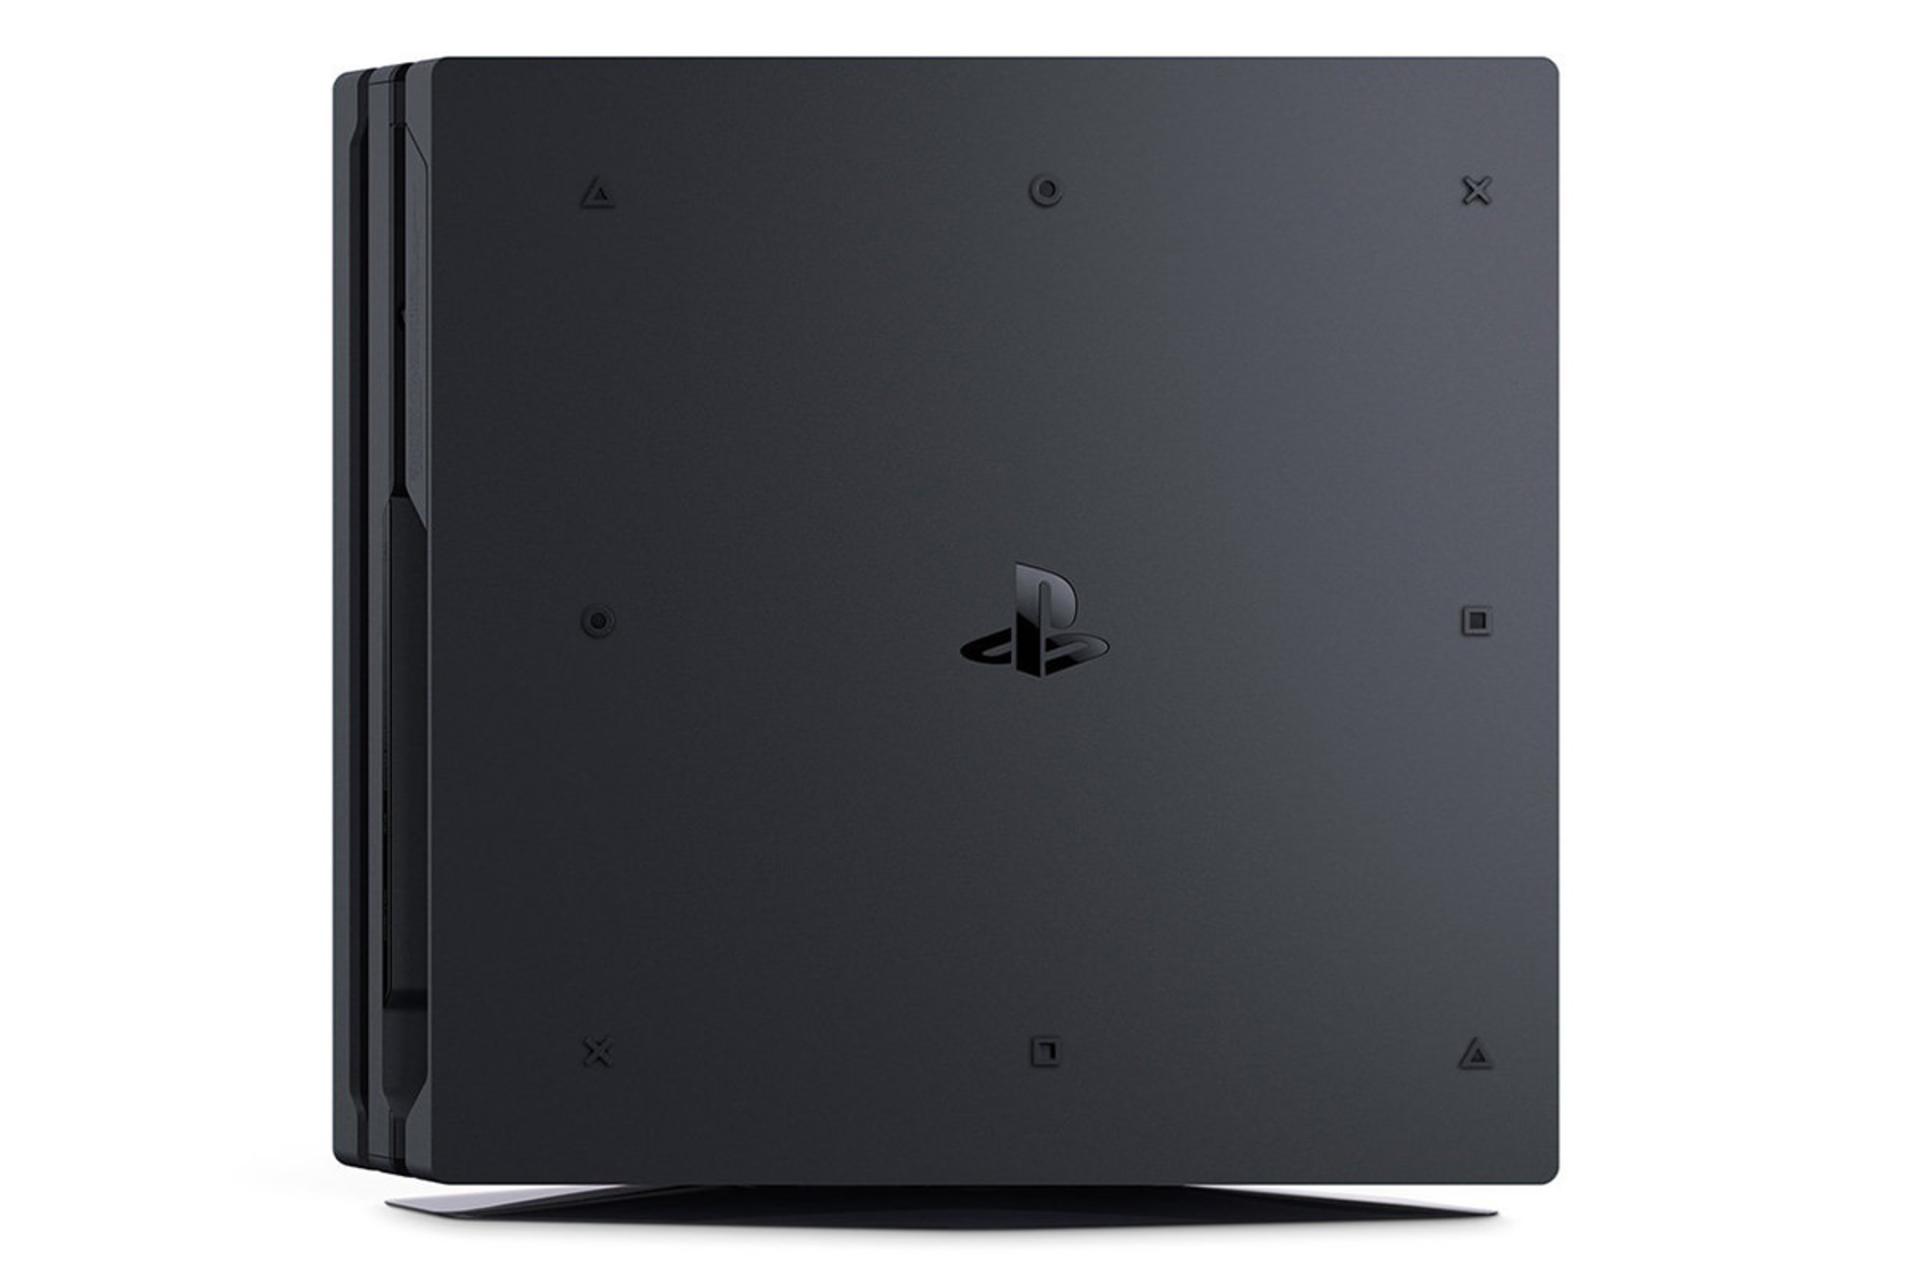 پلی استیشن 4 پرو سونی نمای زیر به صورت ایستاده / Sony Playstation 4 Pro